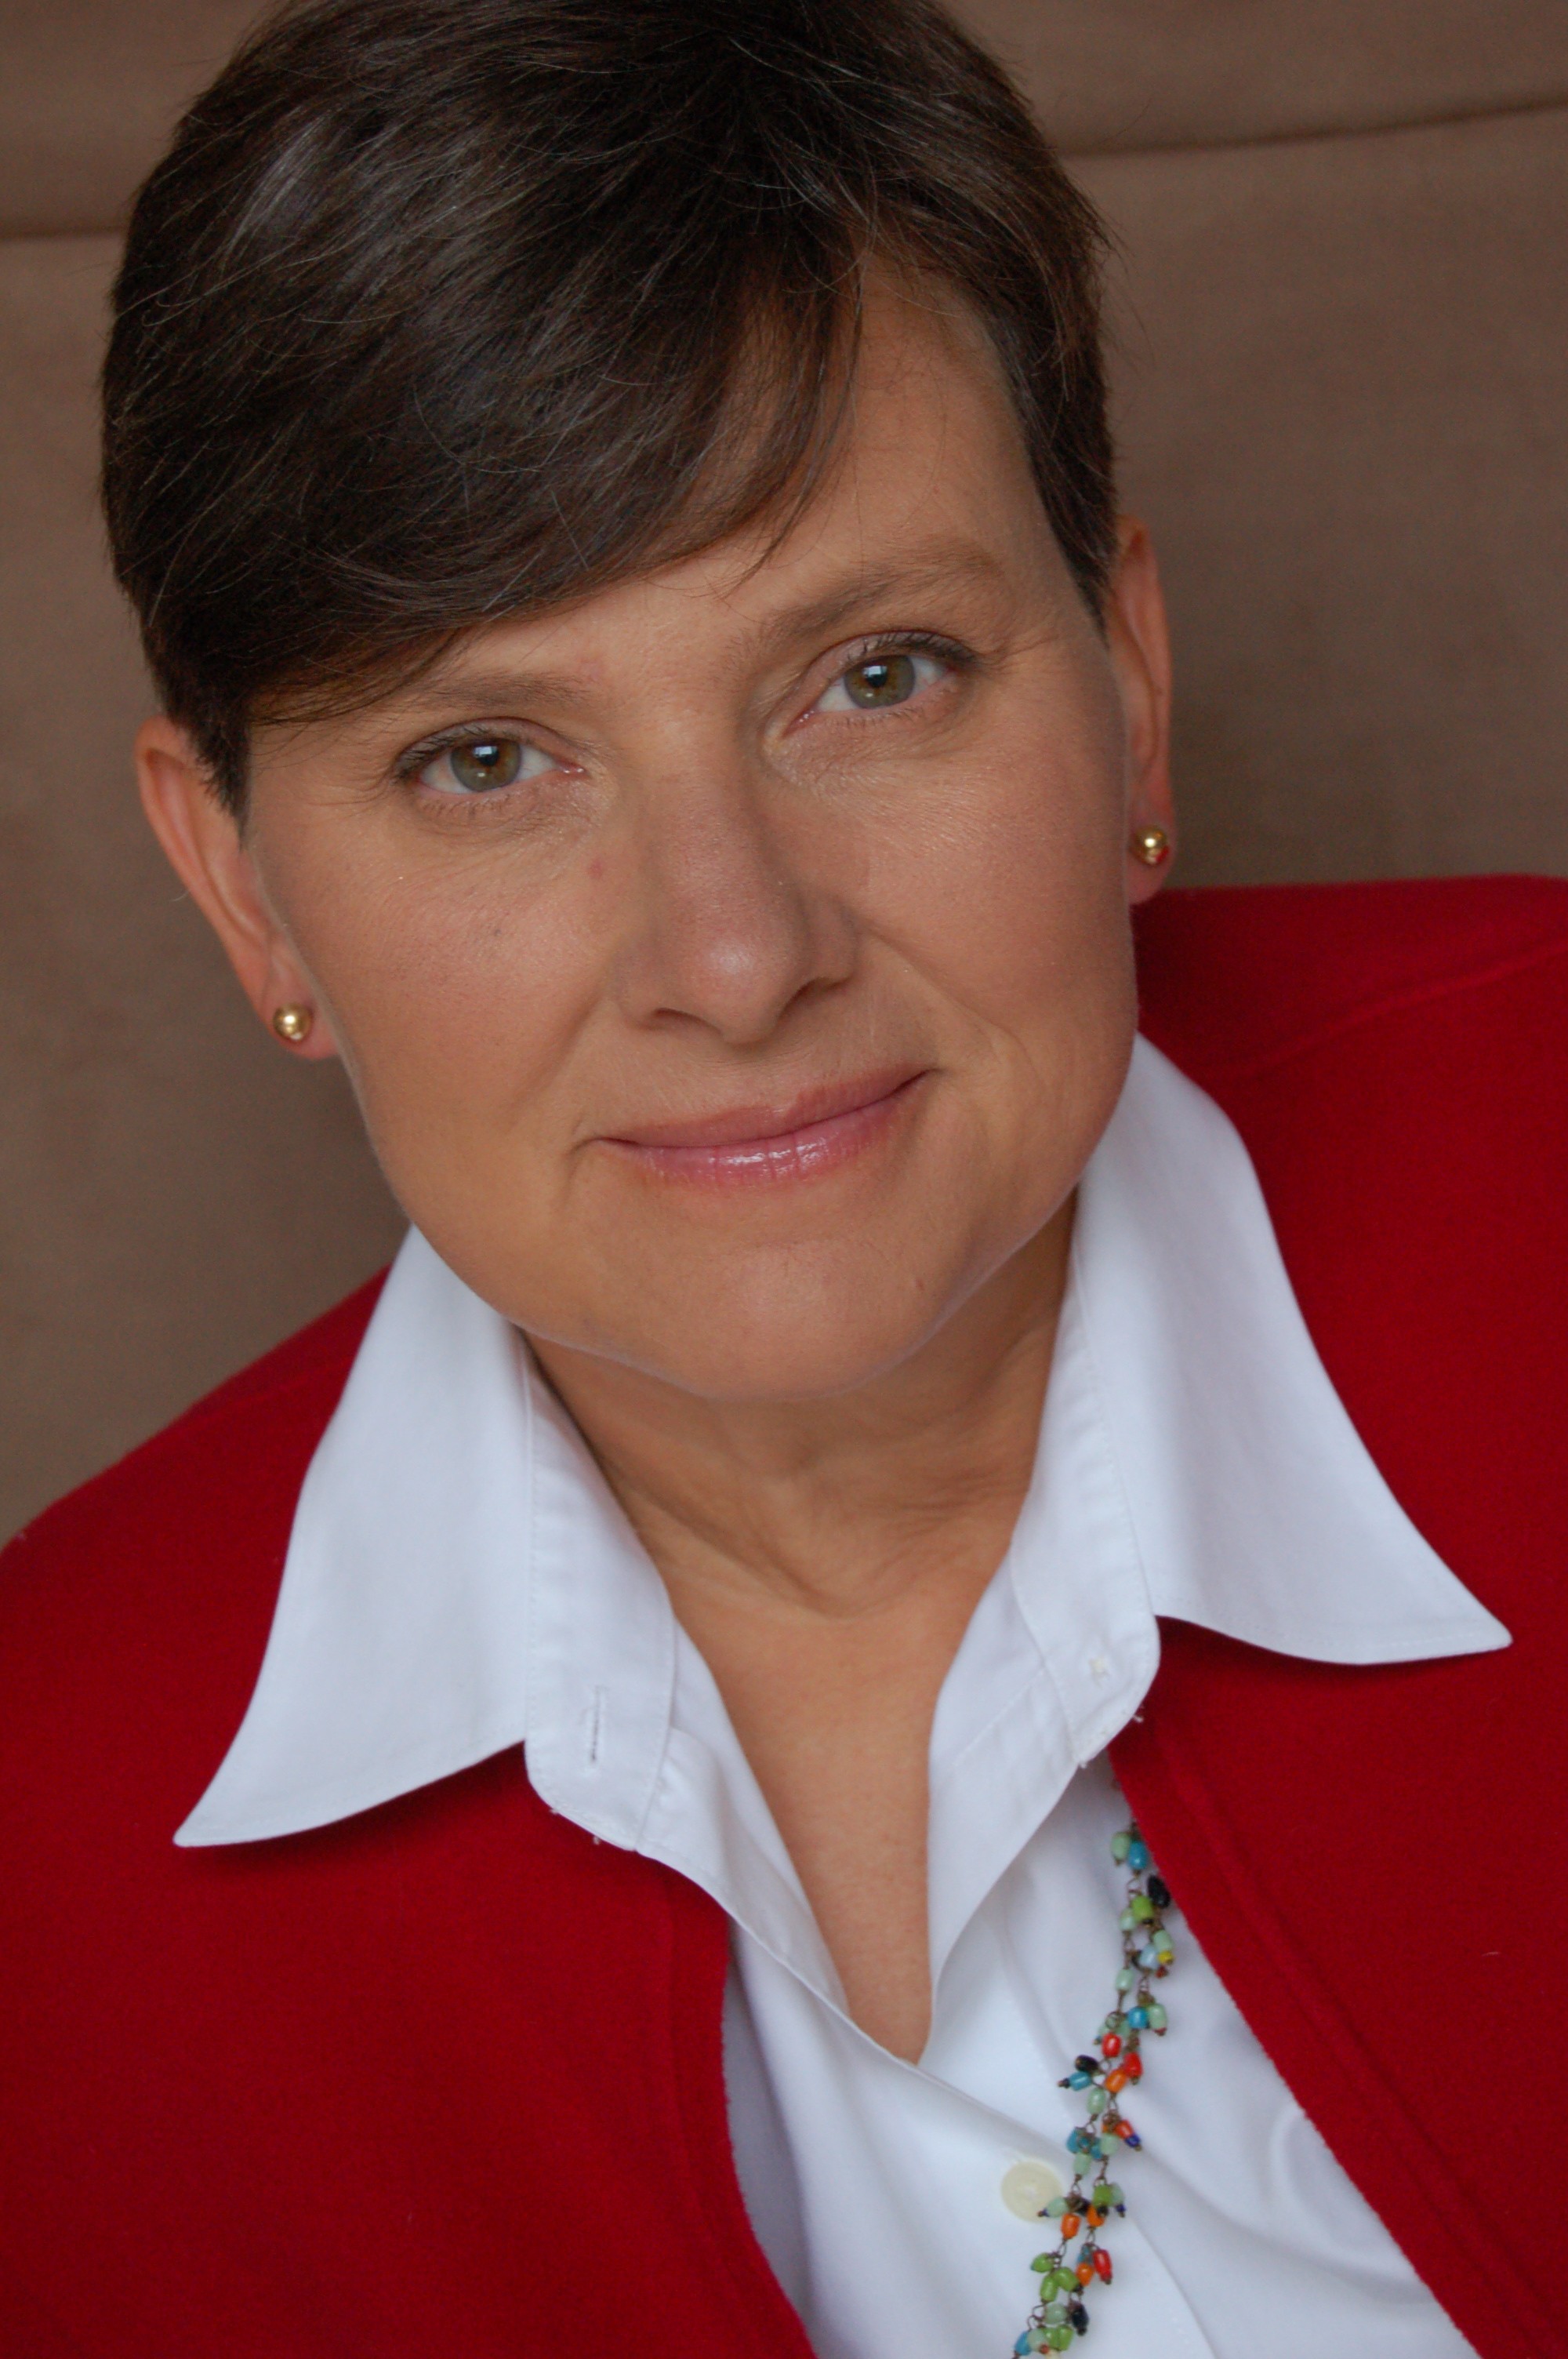 Diane Mueller